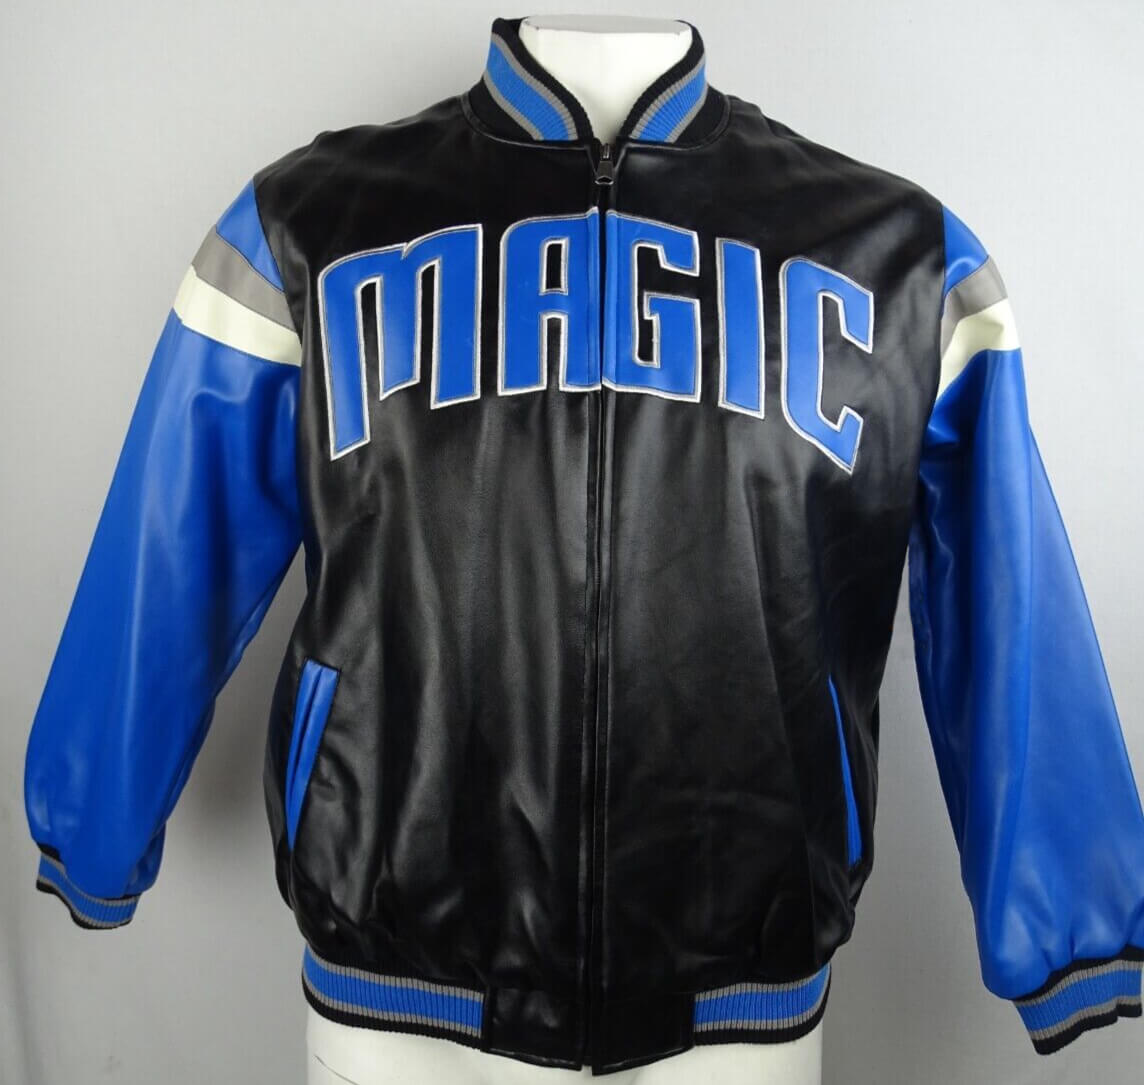 Maker of Jacket Black Leather Jackets NBA Orlando Magic